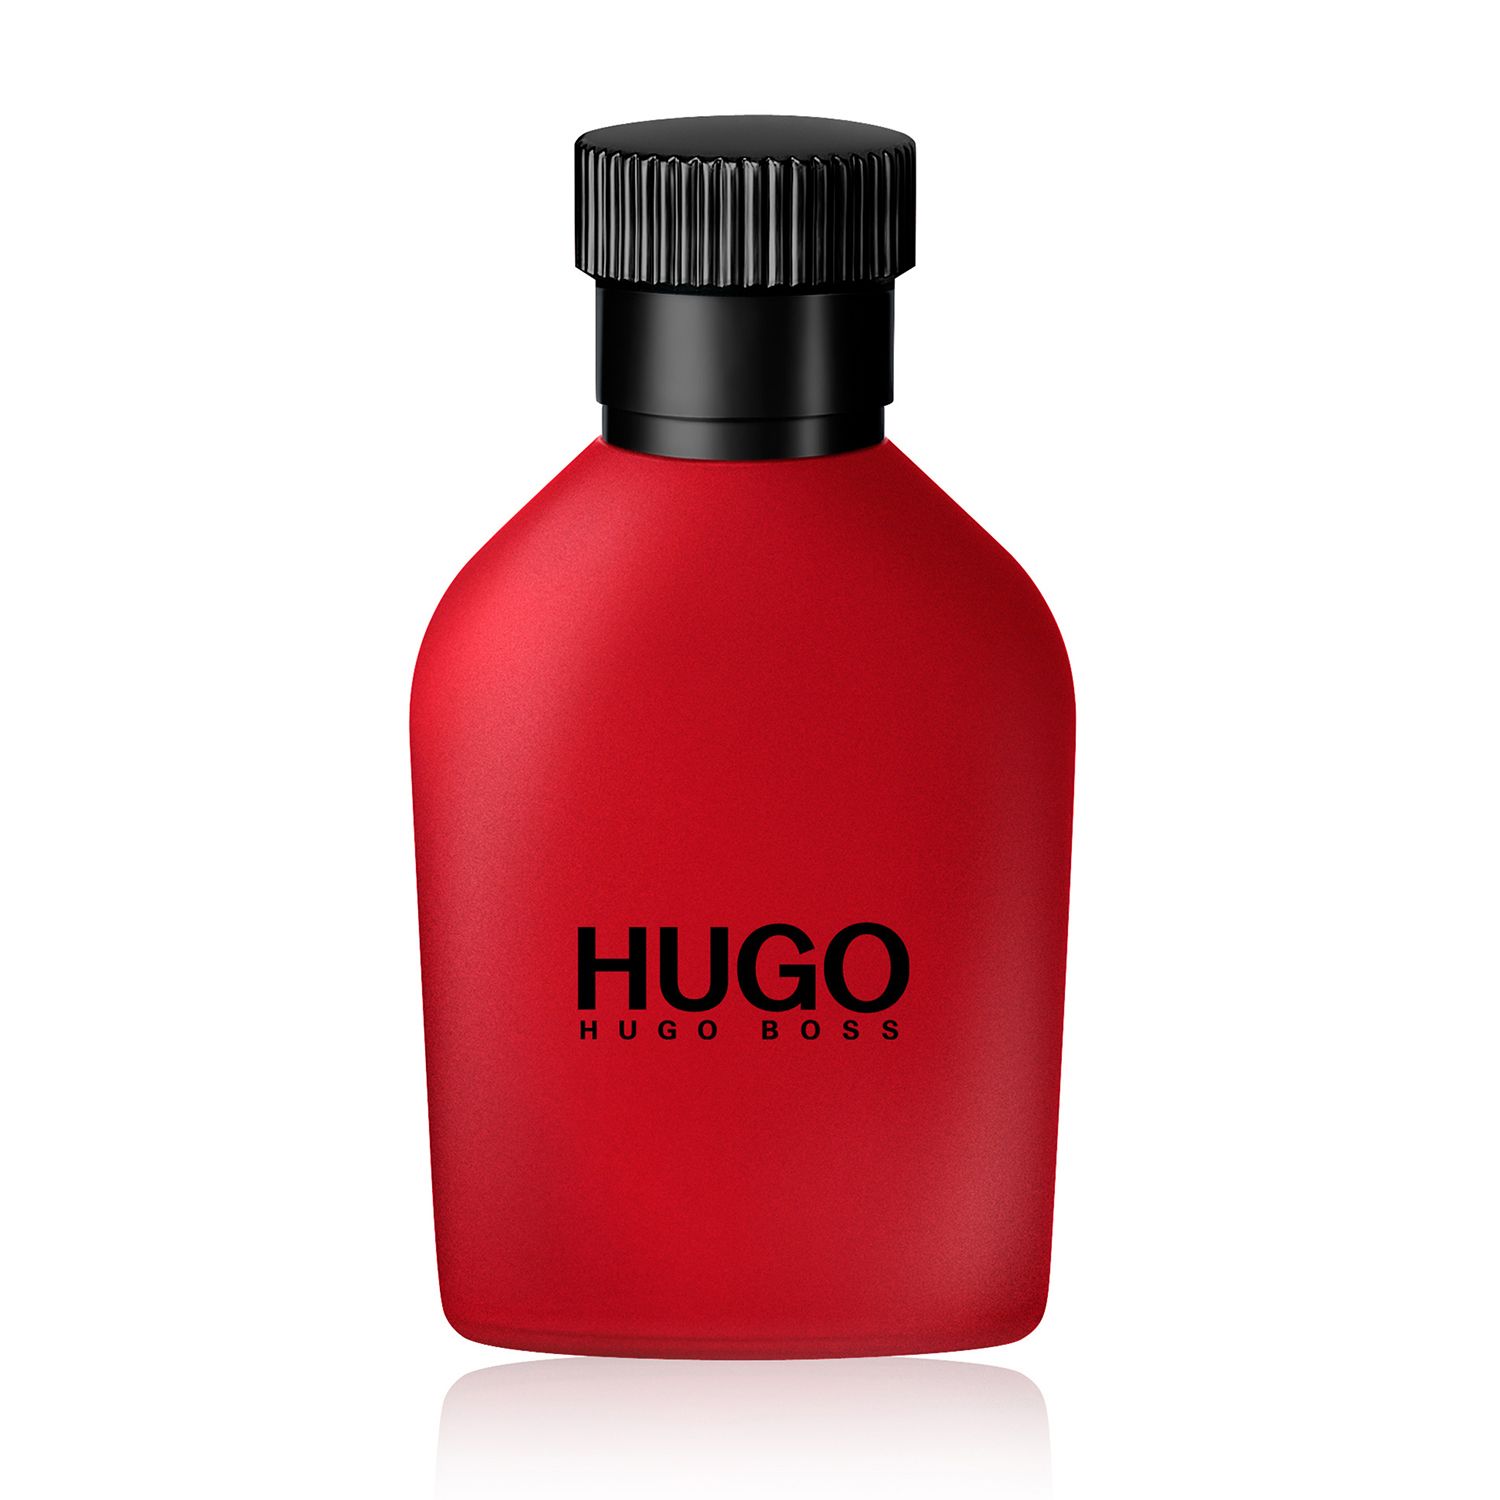 hugo boss red price